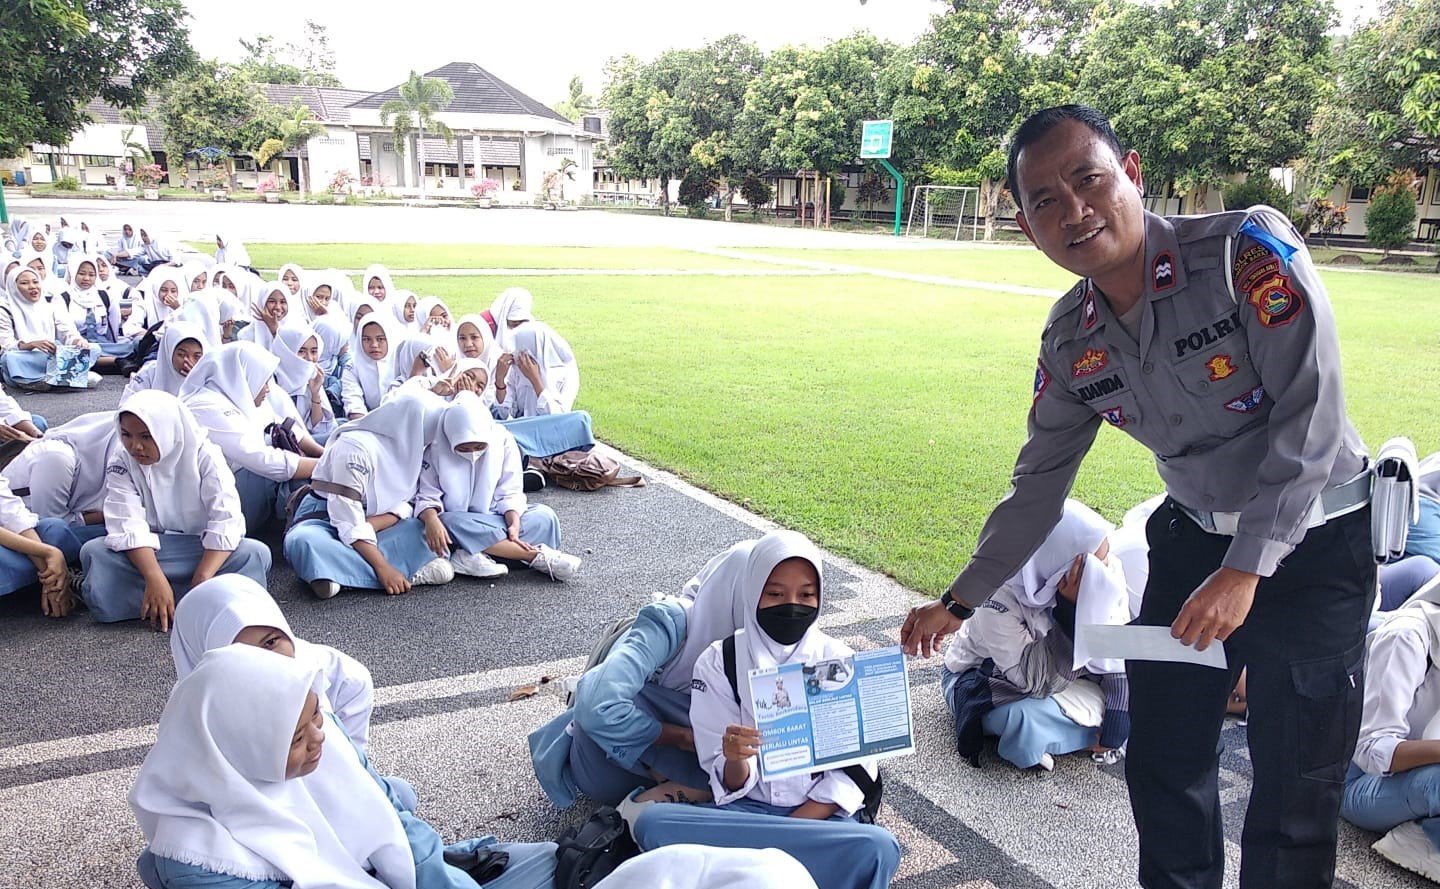 Subsatgas Dikmas Polres Lombok Barat Luncurkan Program Police Goes to School untuk Generasi Muda